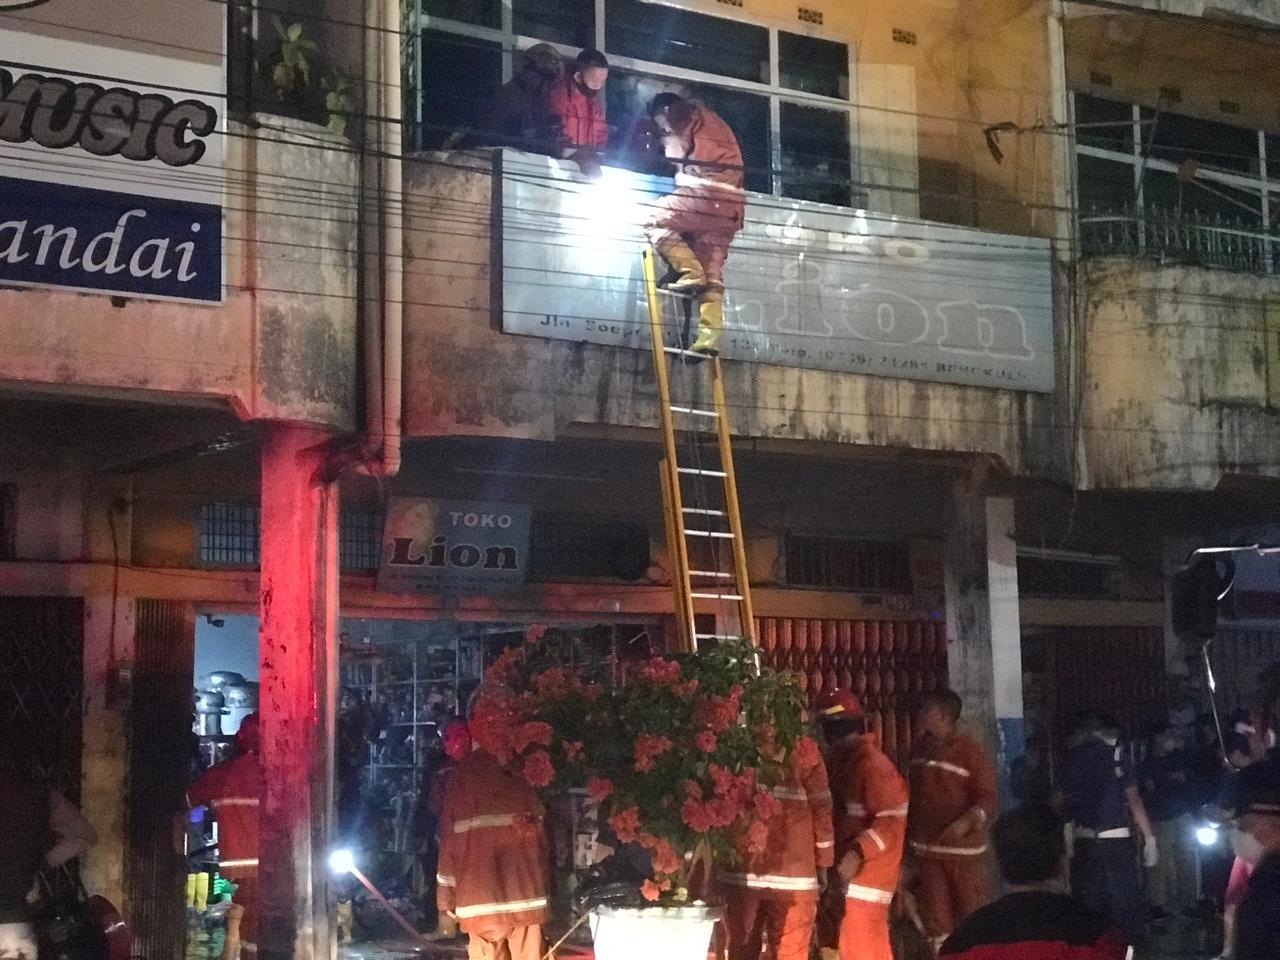 Ditinggal Pulang ke Rumah, Toko Lion di Jalan Suprapto Terbakar, Kerugian Diperkirakan Mencapai Rp 100 Juta